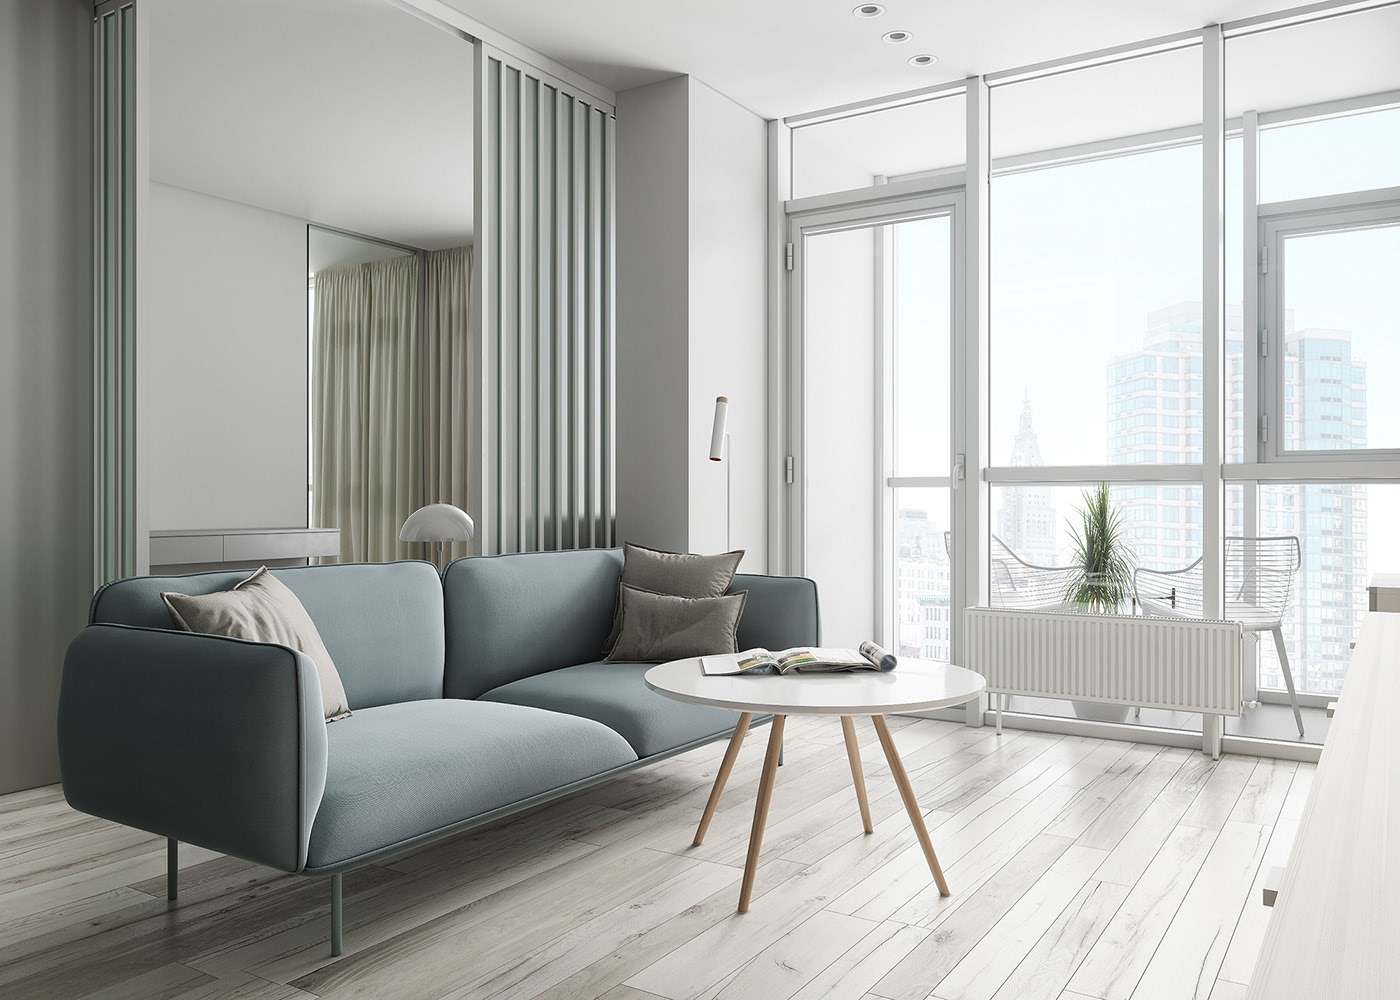 IconP - Thiết kế chung cư căn hộ phong cách tối giản, minimalism